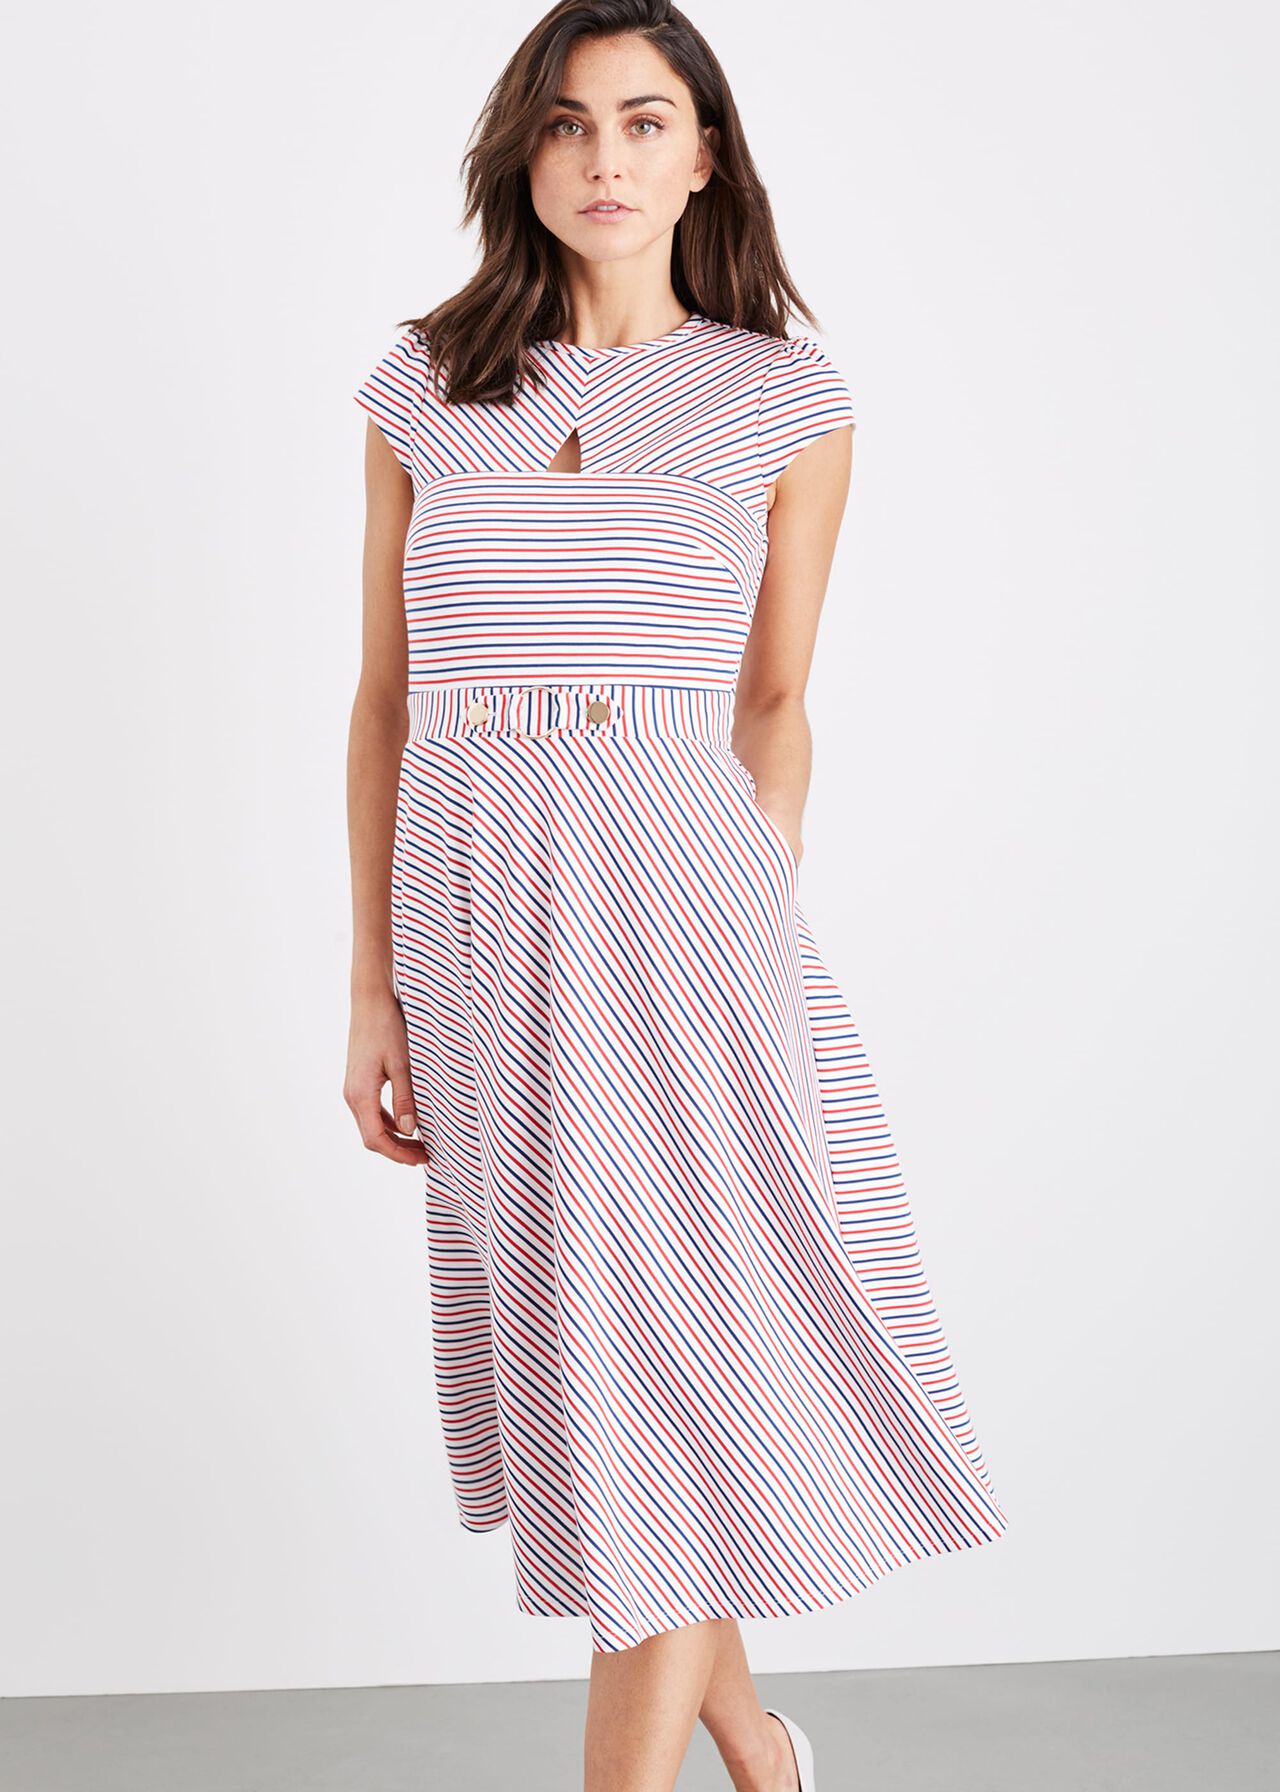 Tilly Stripe Dress